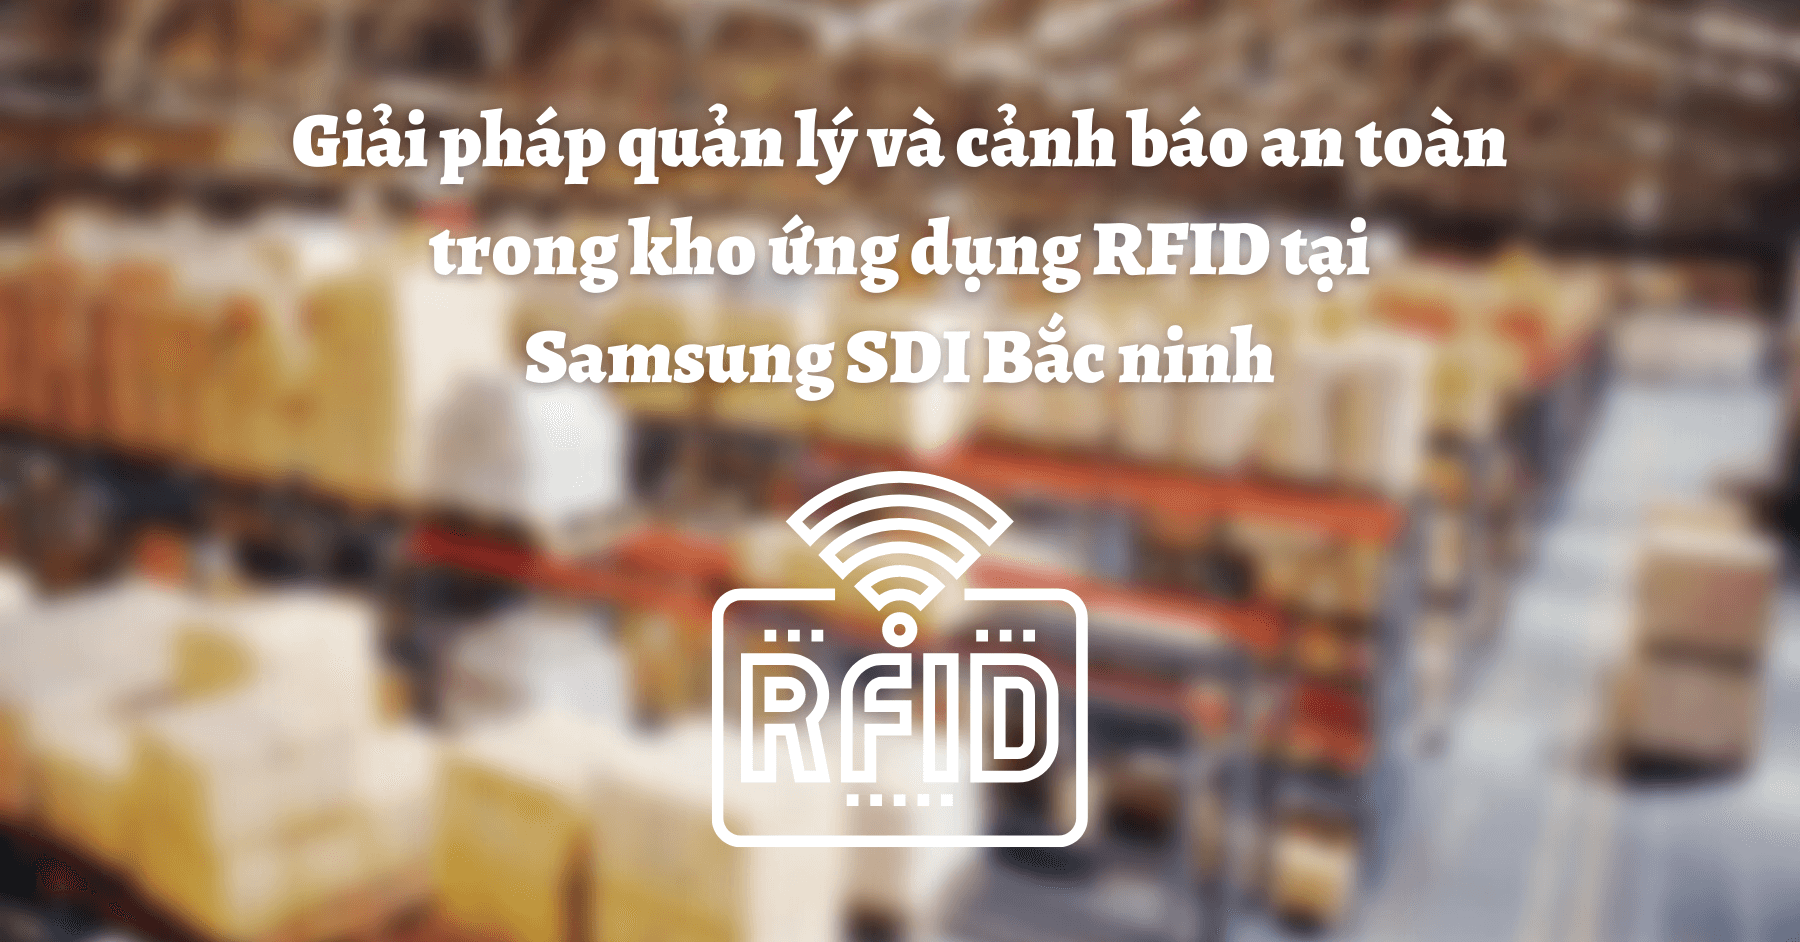 Giải pháp quản lý và cảnh báo an toàn trong kho ứng dụng RFID tại Samsung SDI Bắc ninh